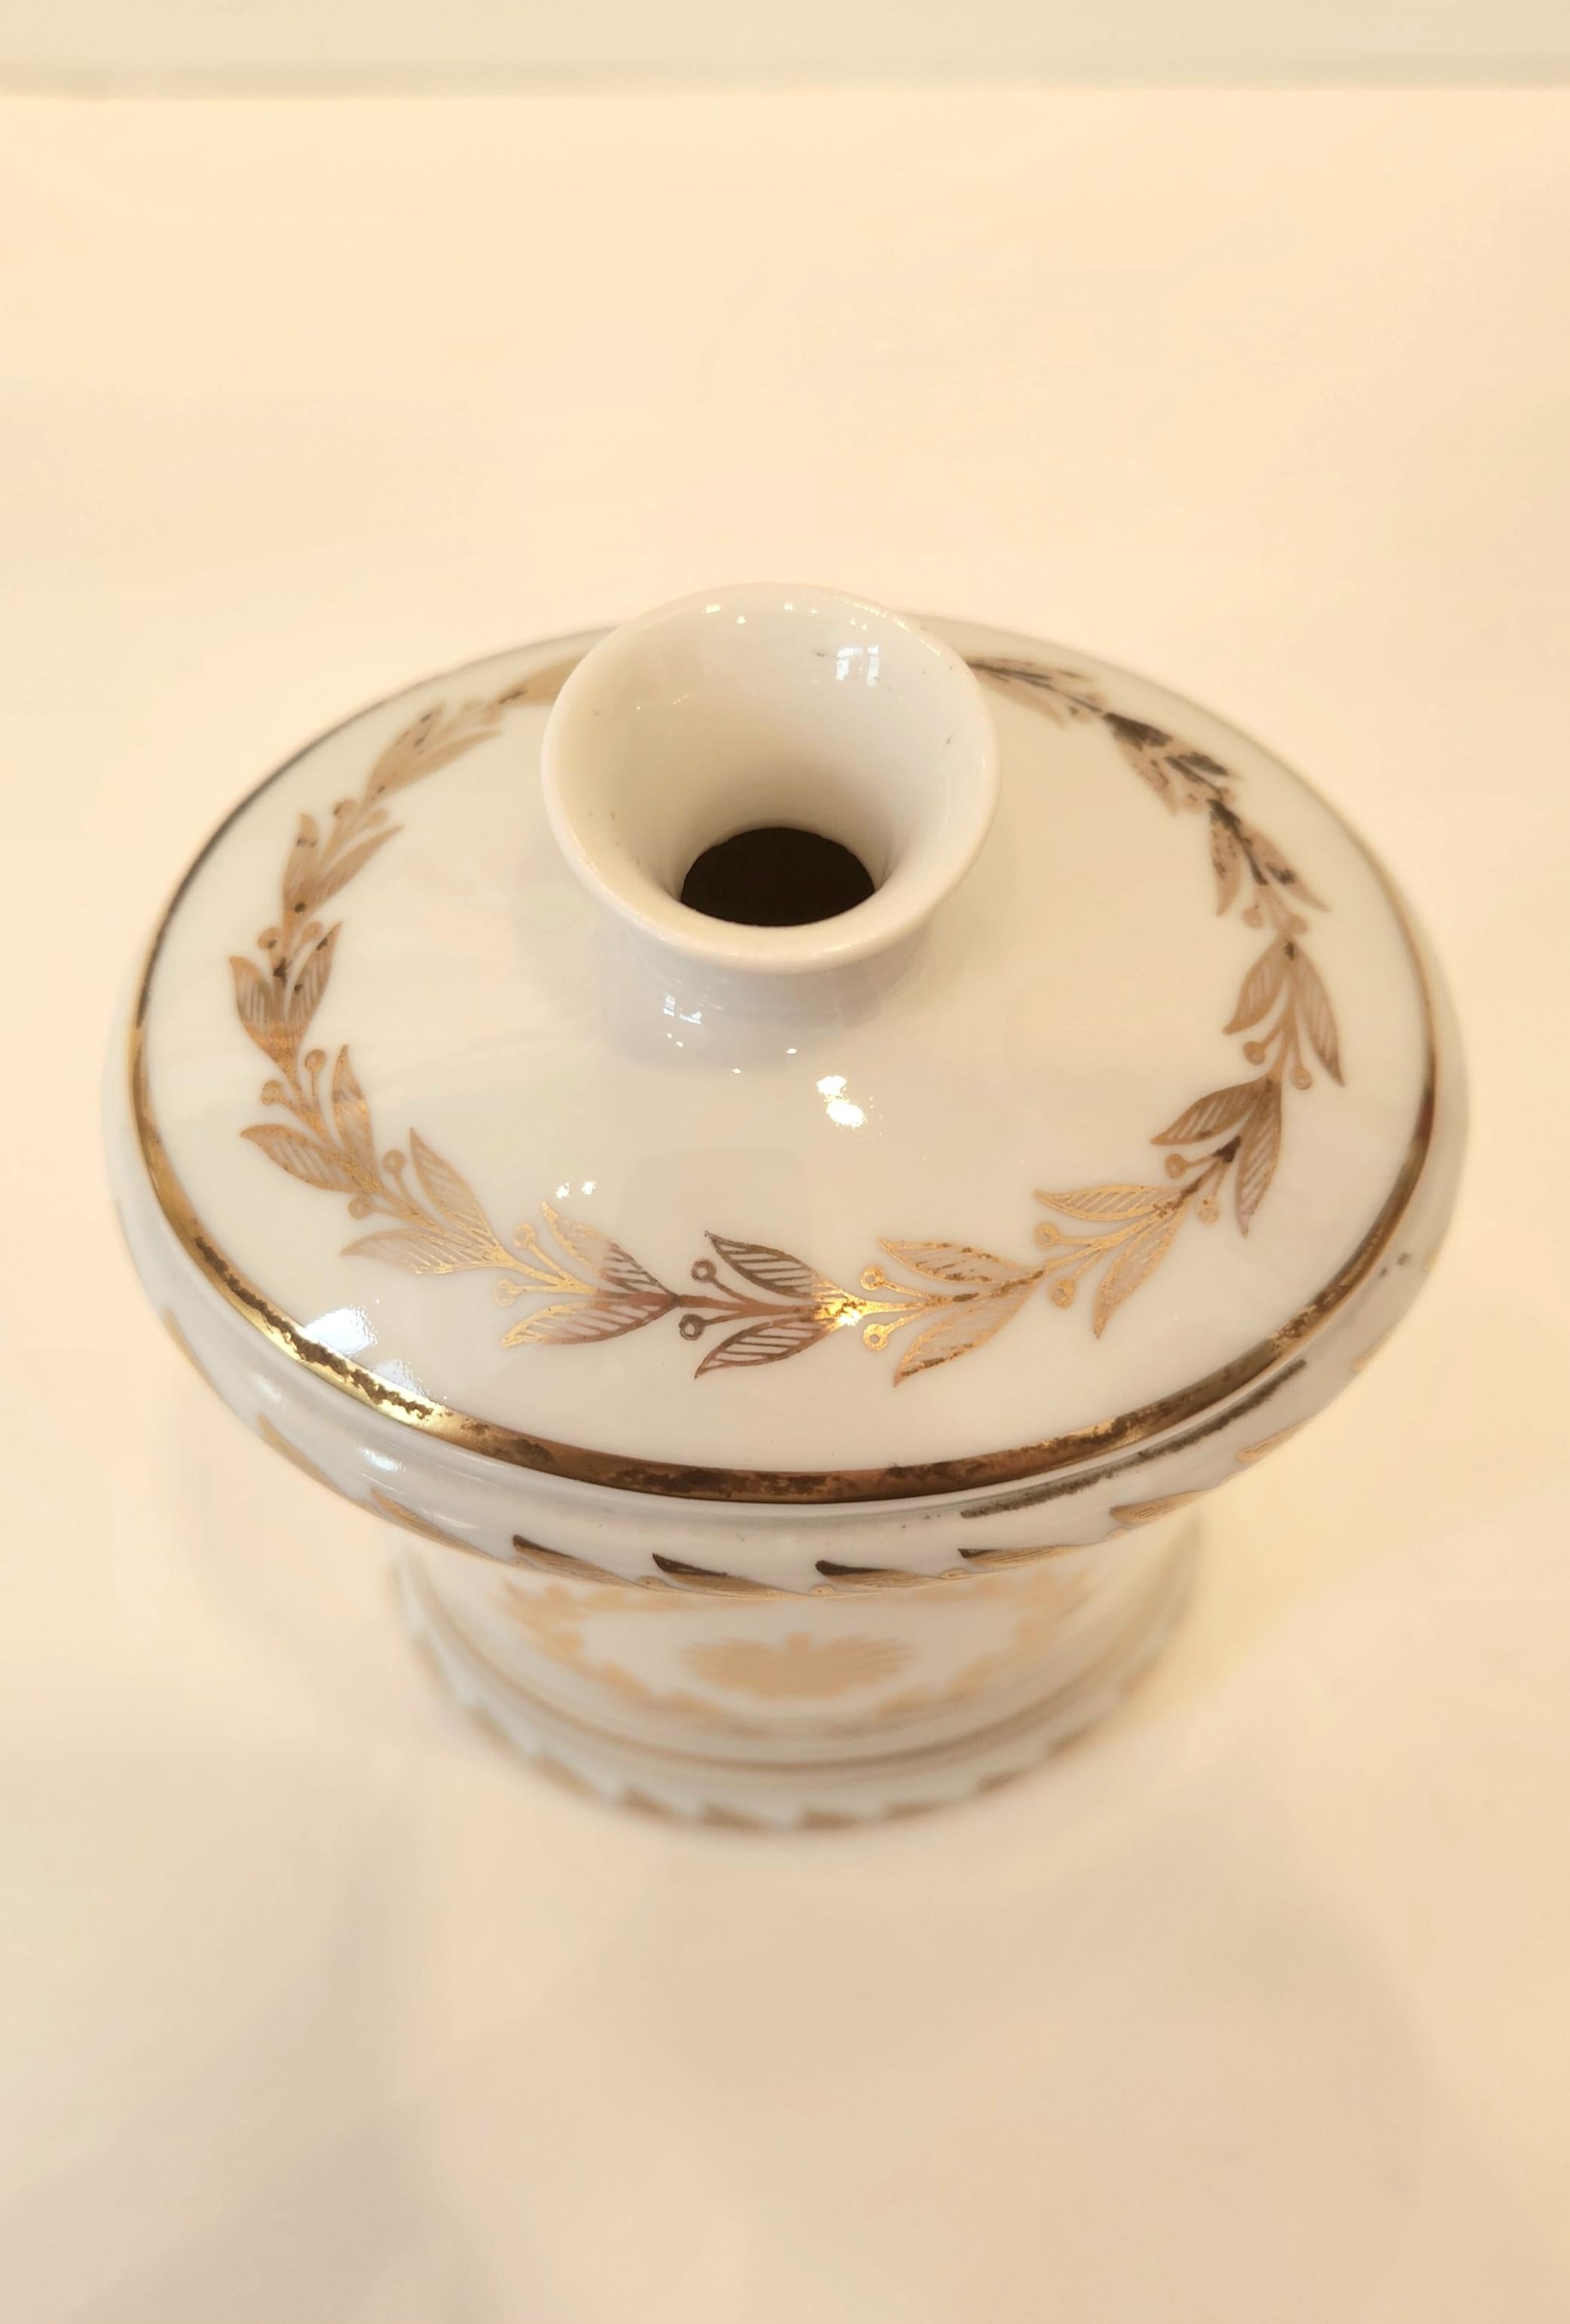 Ce magnifique vase de Sèvres est fait de porcelaine avec un design/One et est destiné à contenir une seule fleur. Ce vase en porcelaine peint à la main est une merveilleuse décoration en soi, mais il peut aussi contenir des fleurs ou de la verdure.